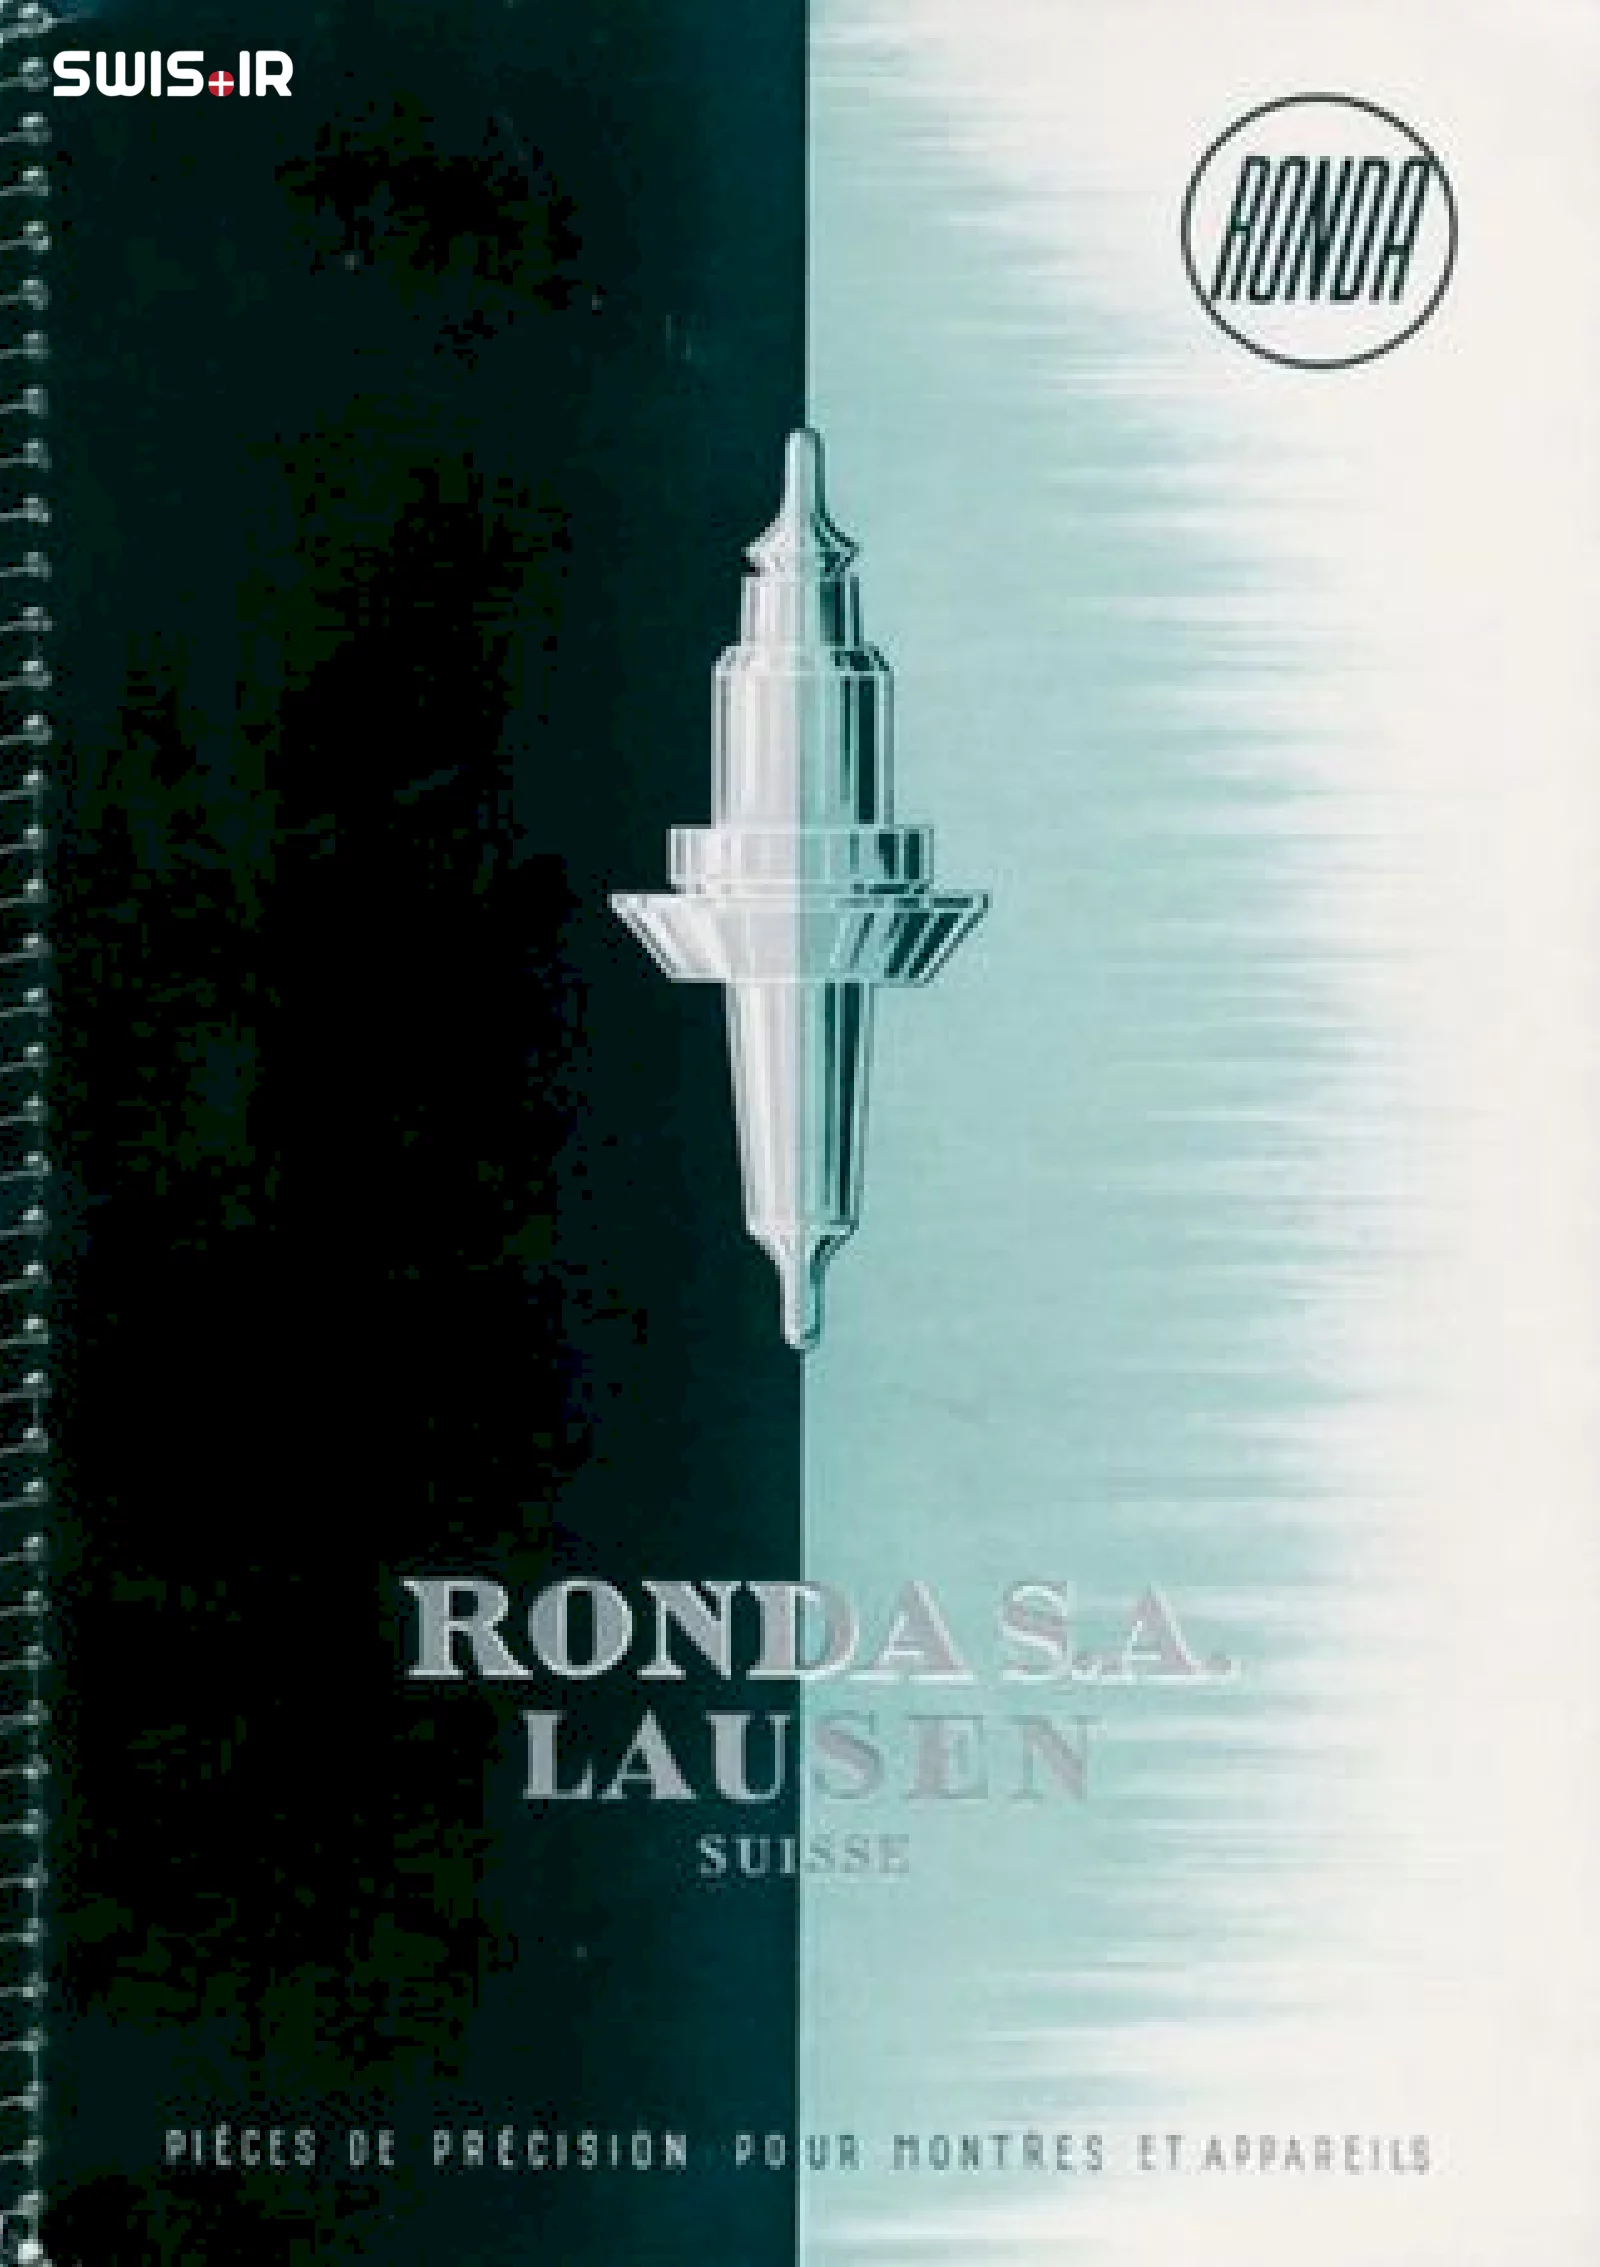 کتابچه کاتالوگ قطعات ساعت تولیدی شرکت روندا سوئیس